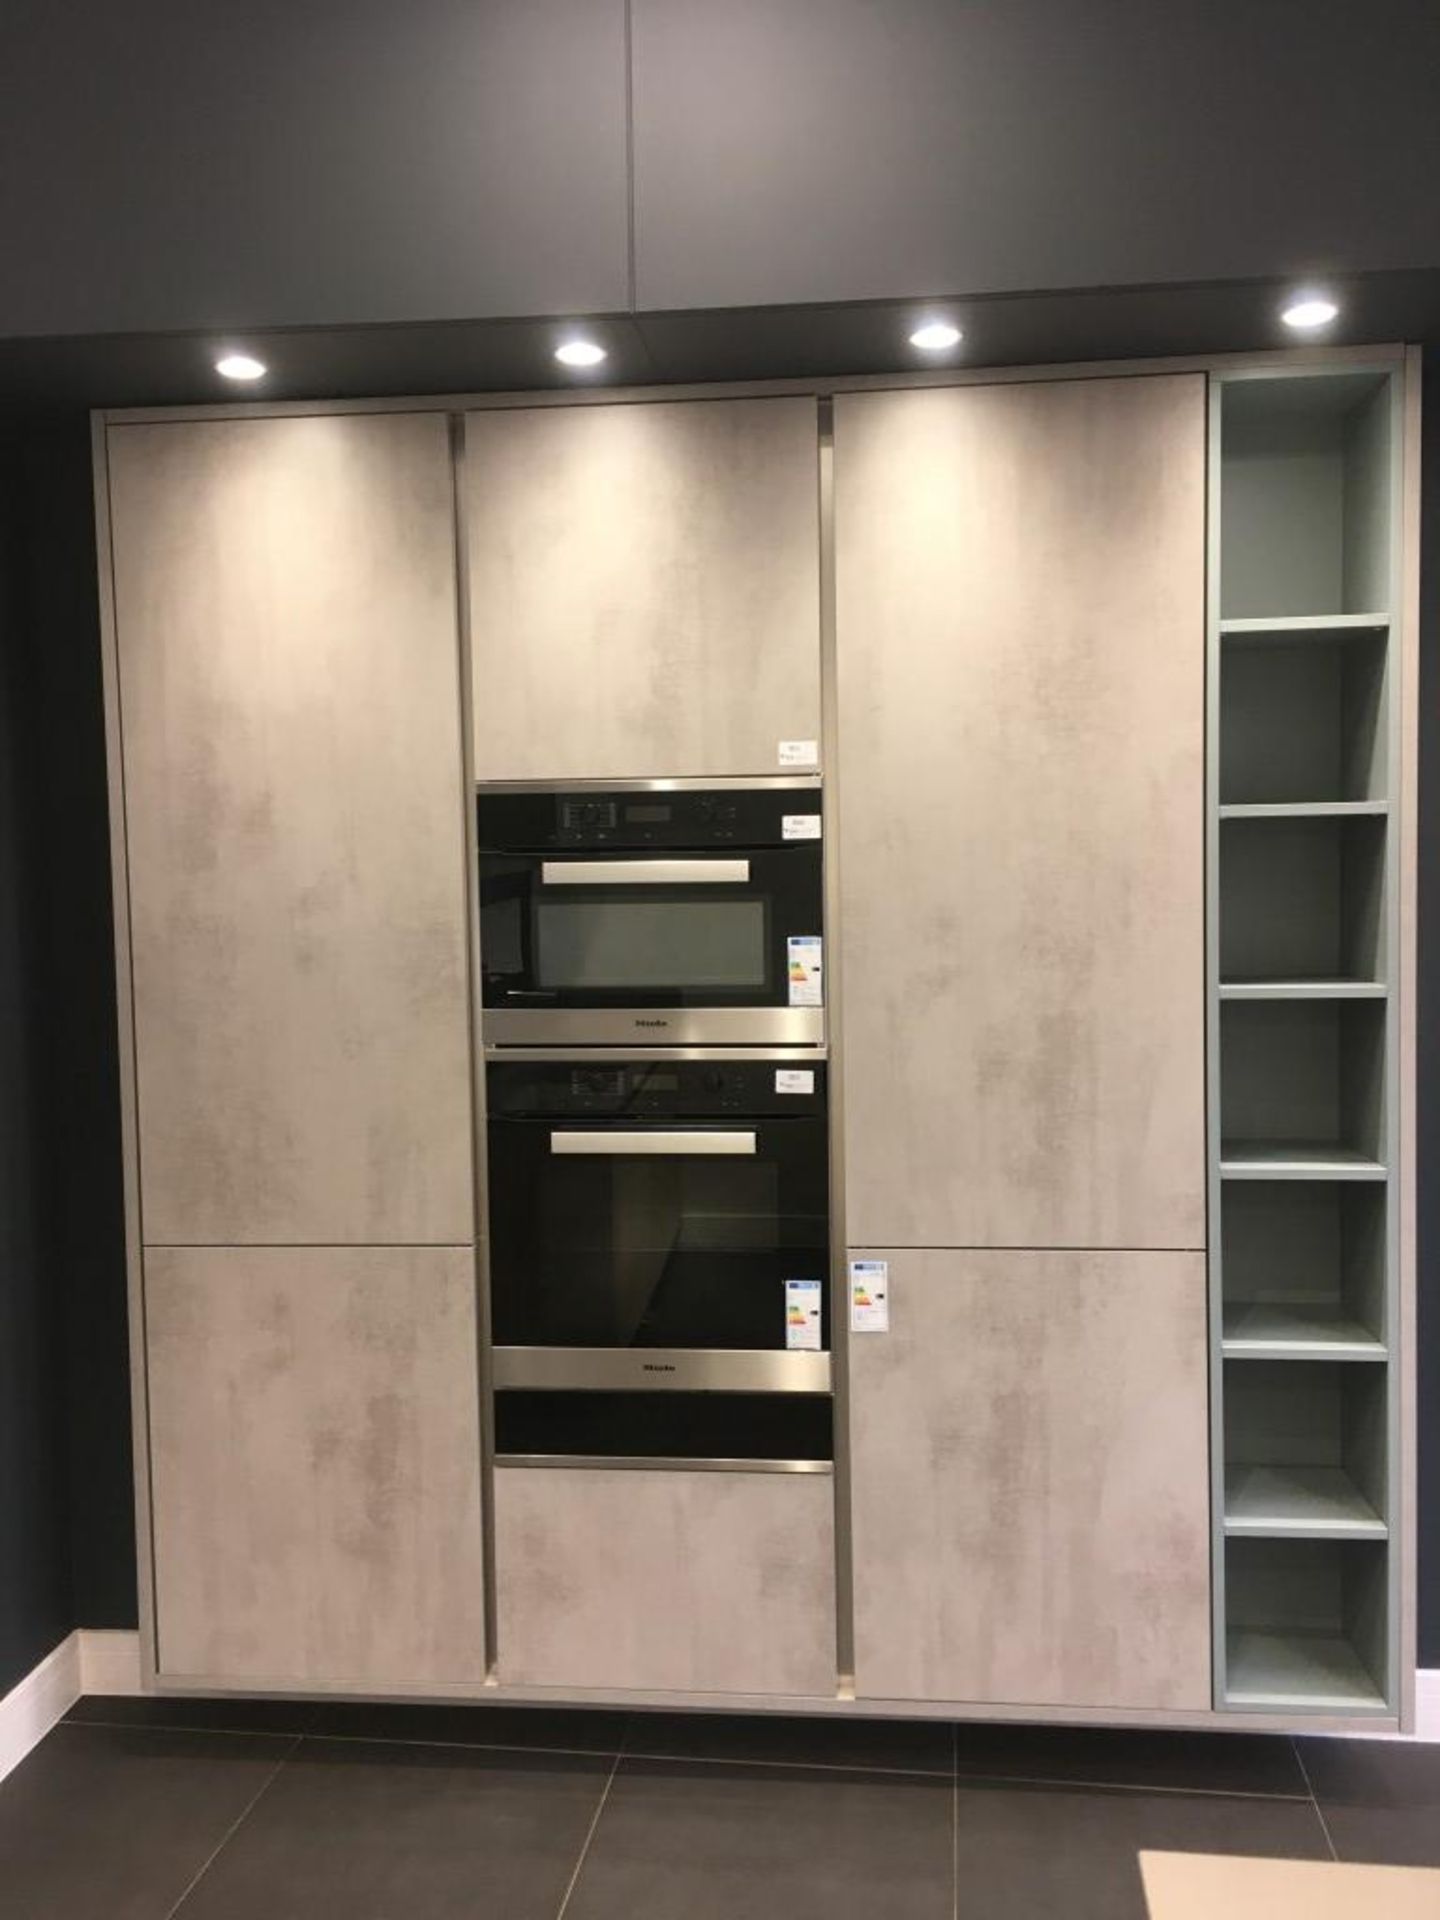 Schmidt kitchen including (3) cupboards (1) drawer & shelving unit